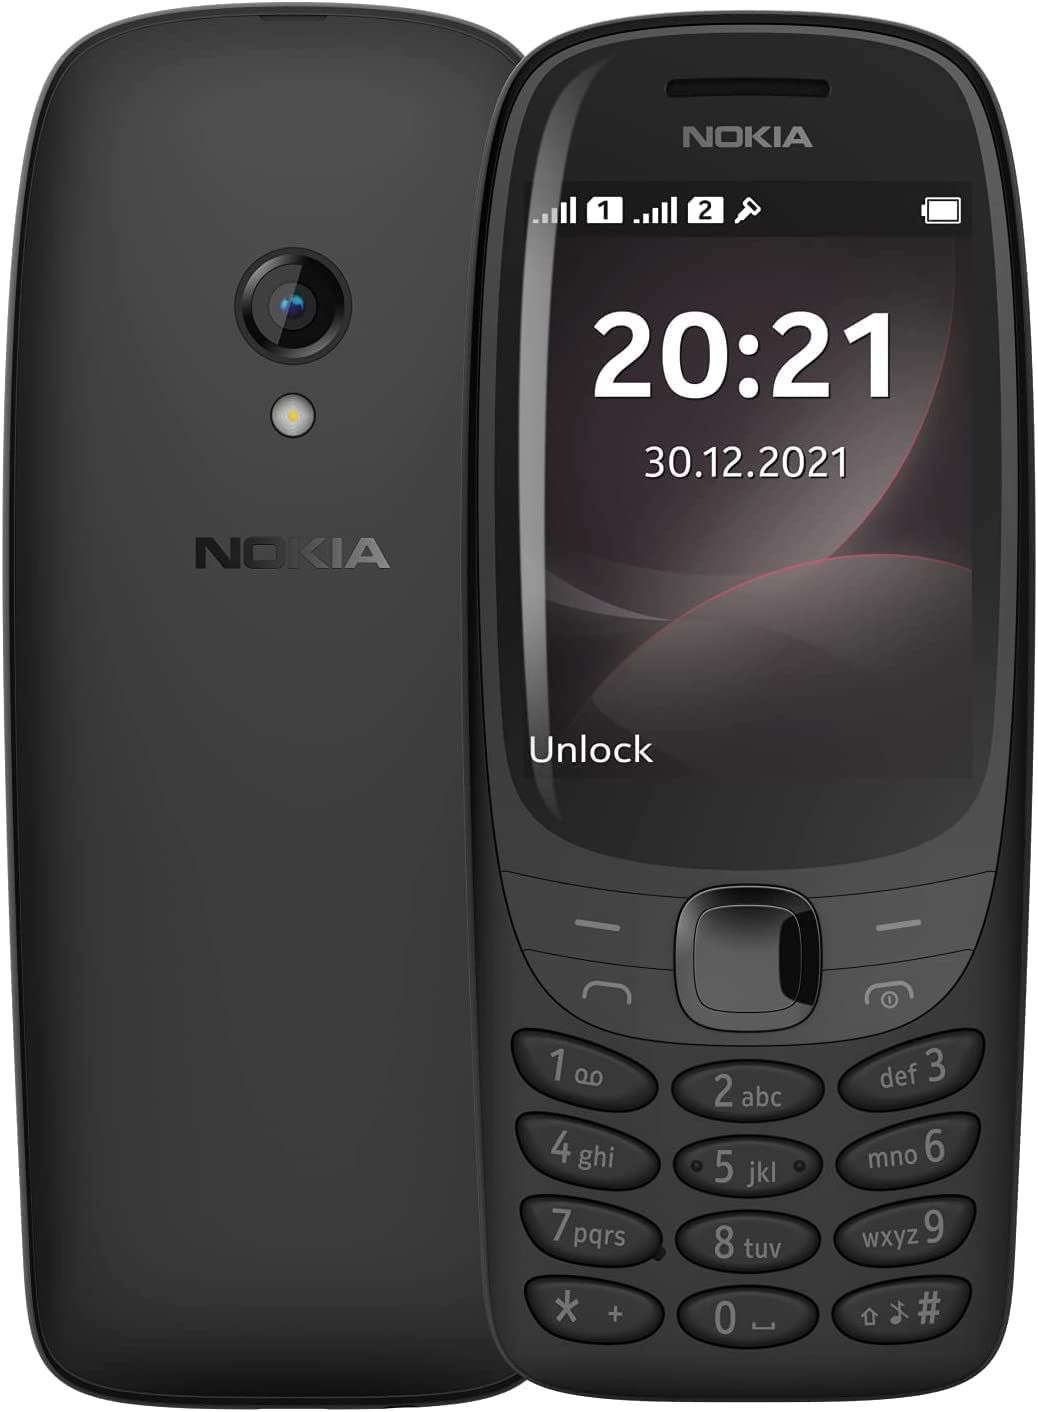 Nokia 6310 yengi telefon